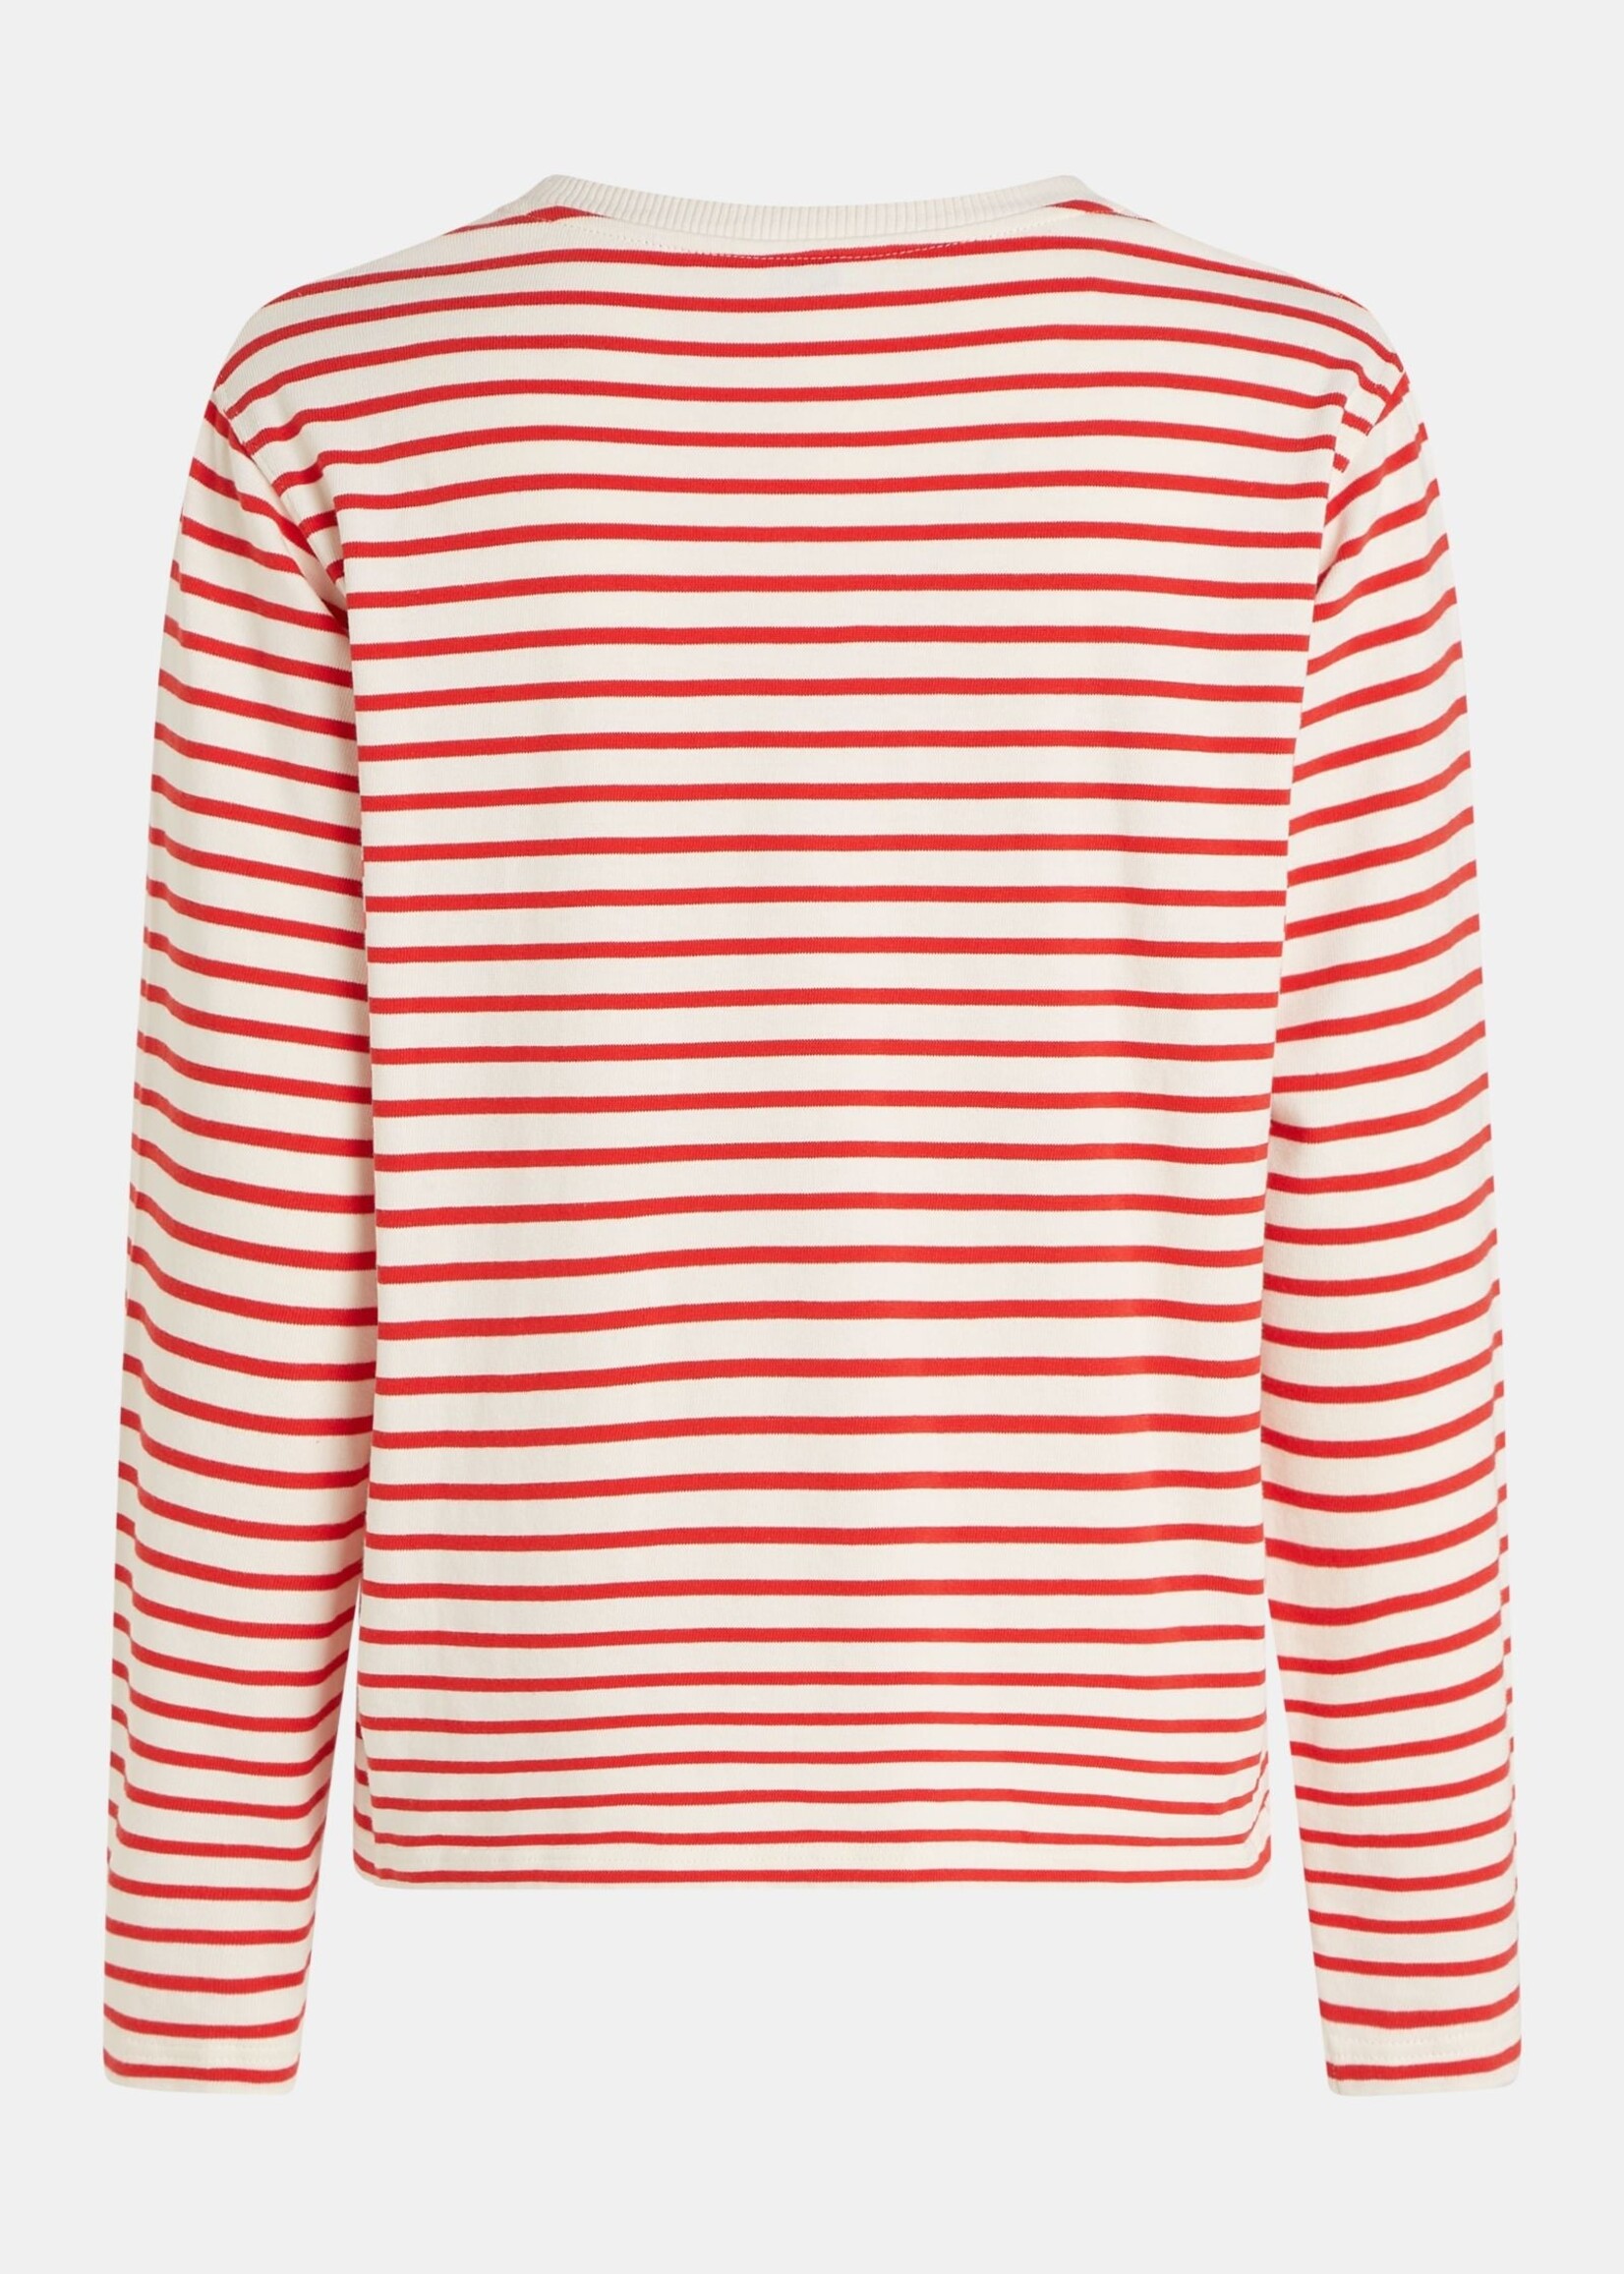 PENN & INK Sweater Stripe